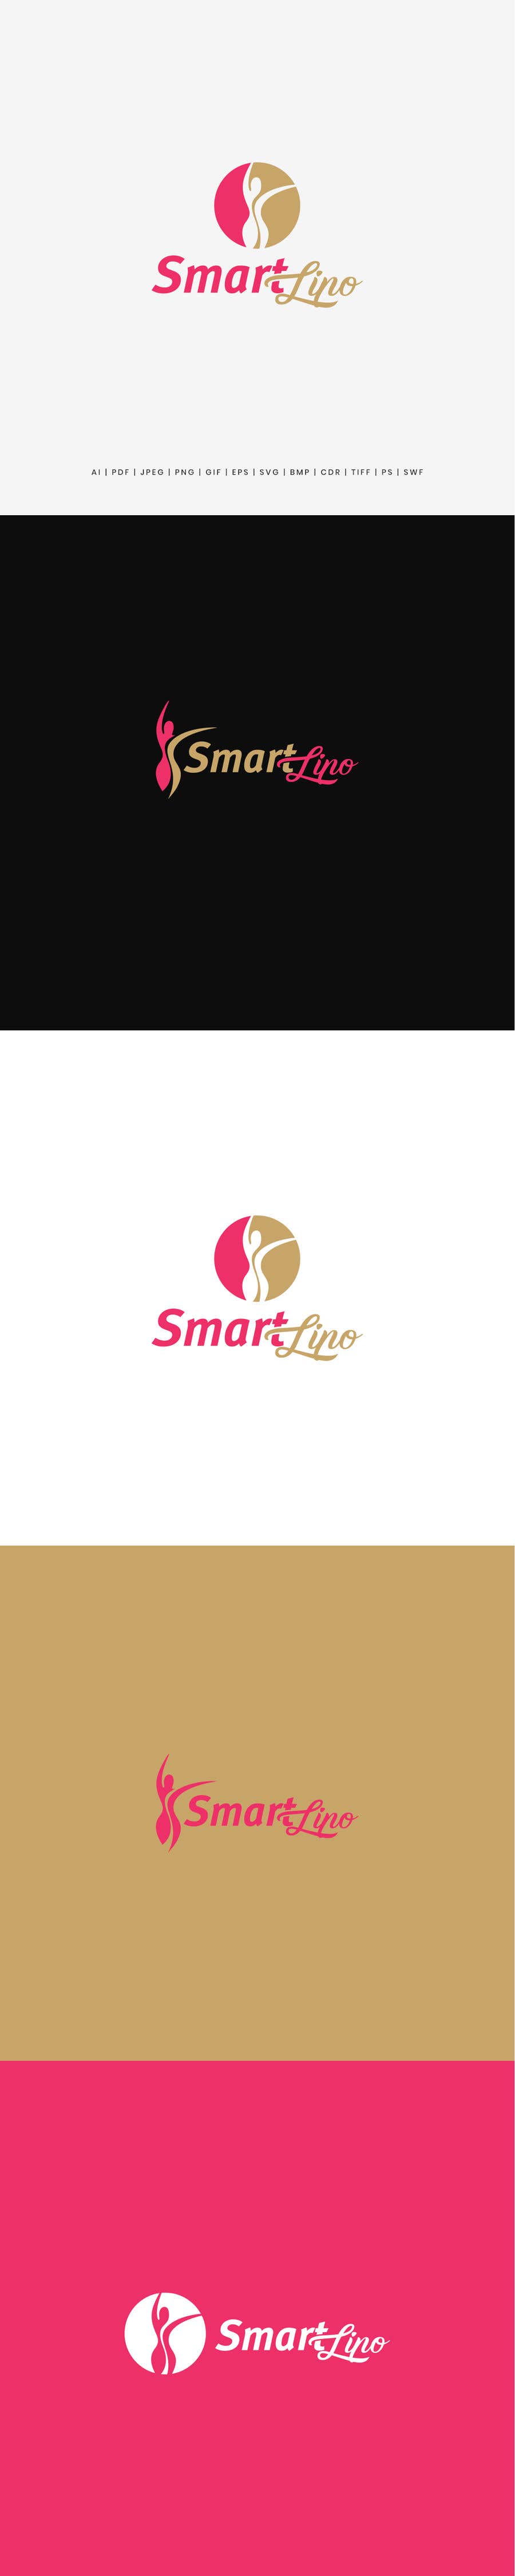 Kandidatura #5për                                                 Smartlipo logo, landing page, social media ad
                                            